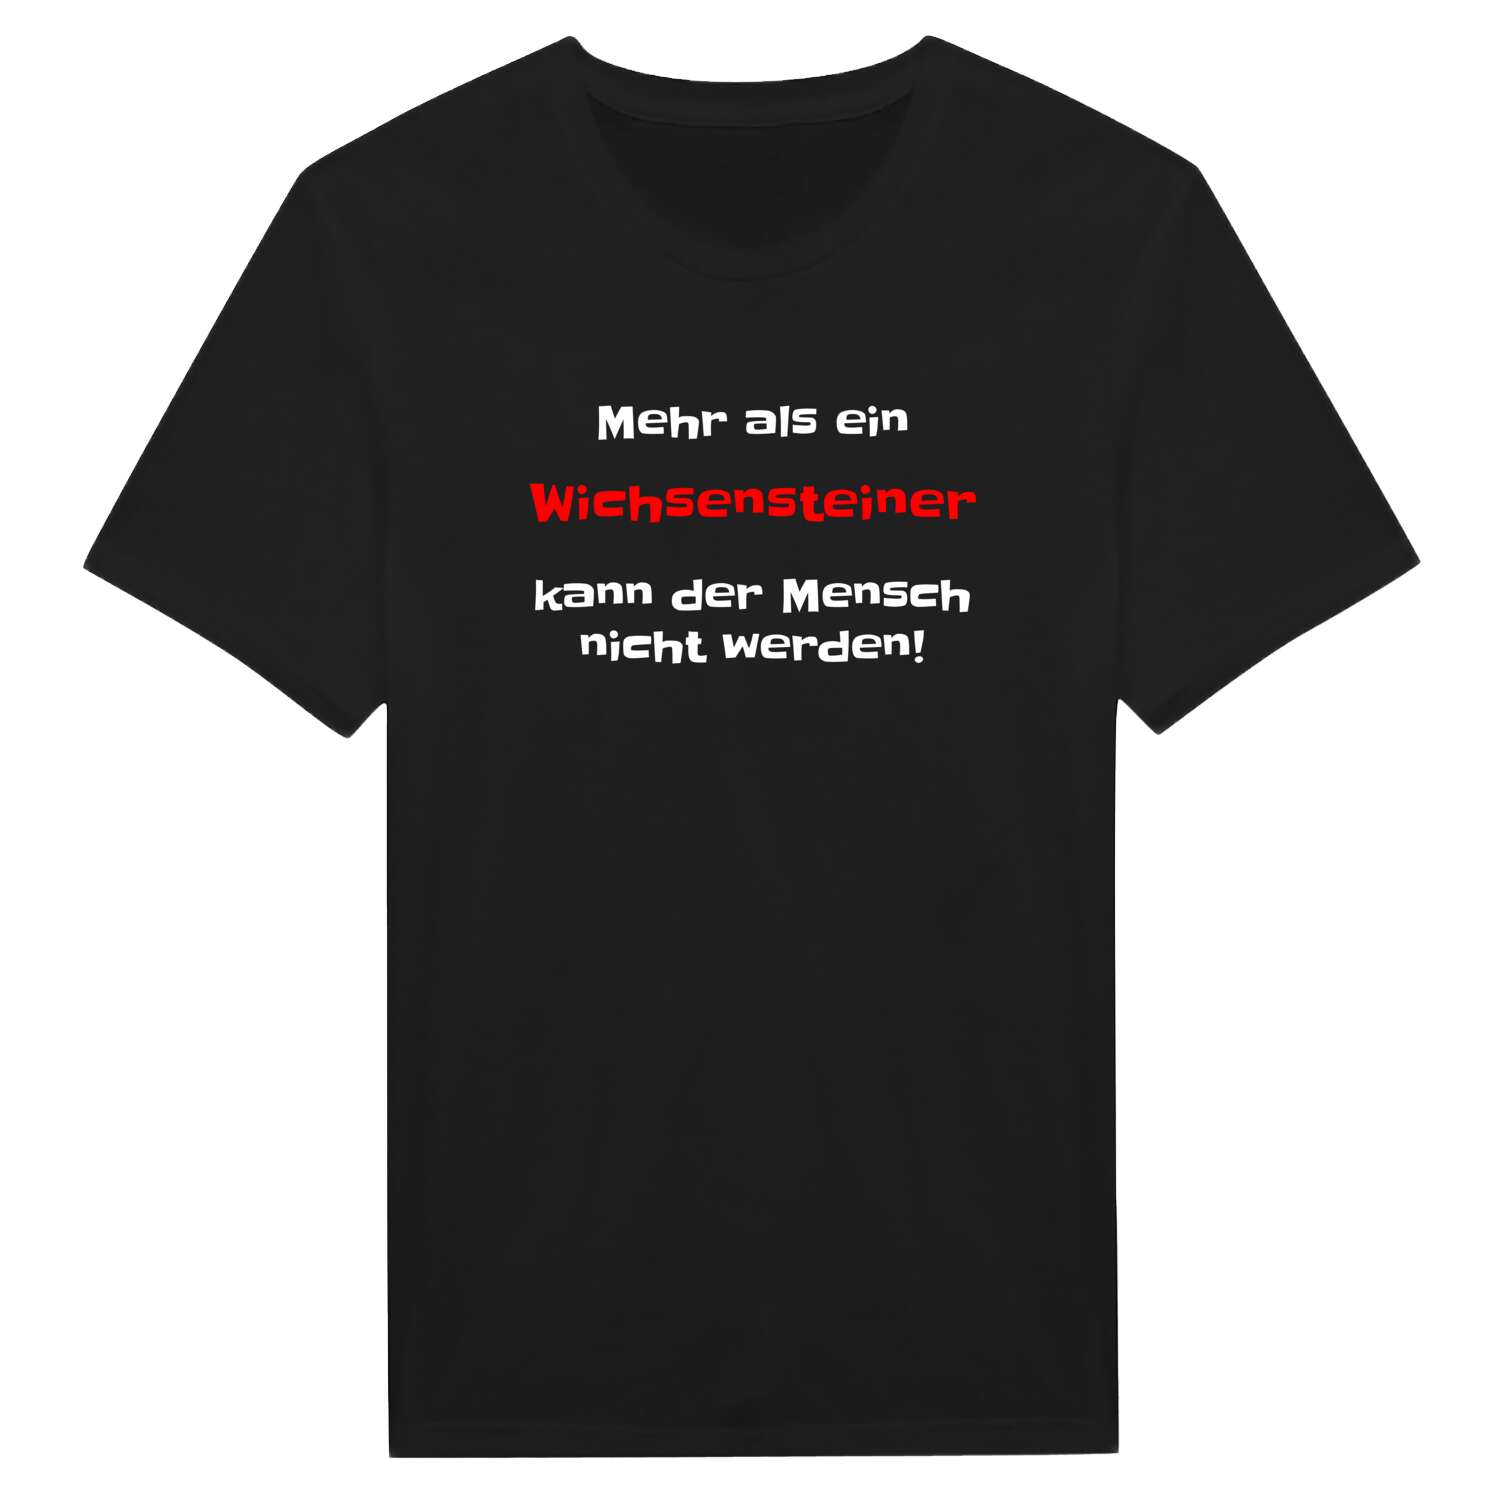 Wichsenstein T-Shirt »Mehr als ein«